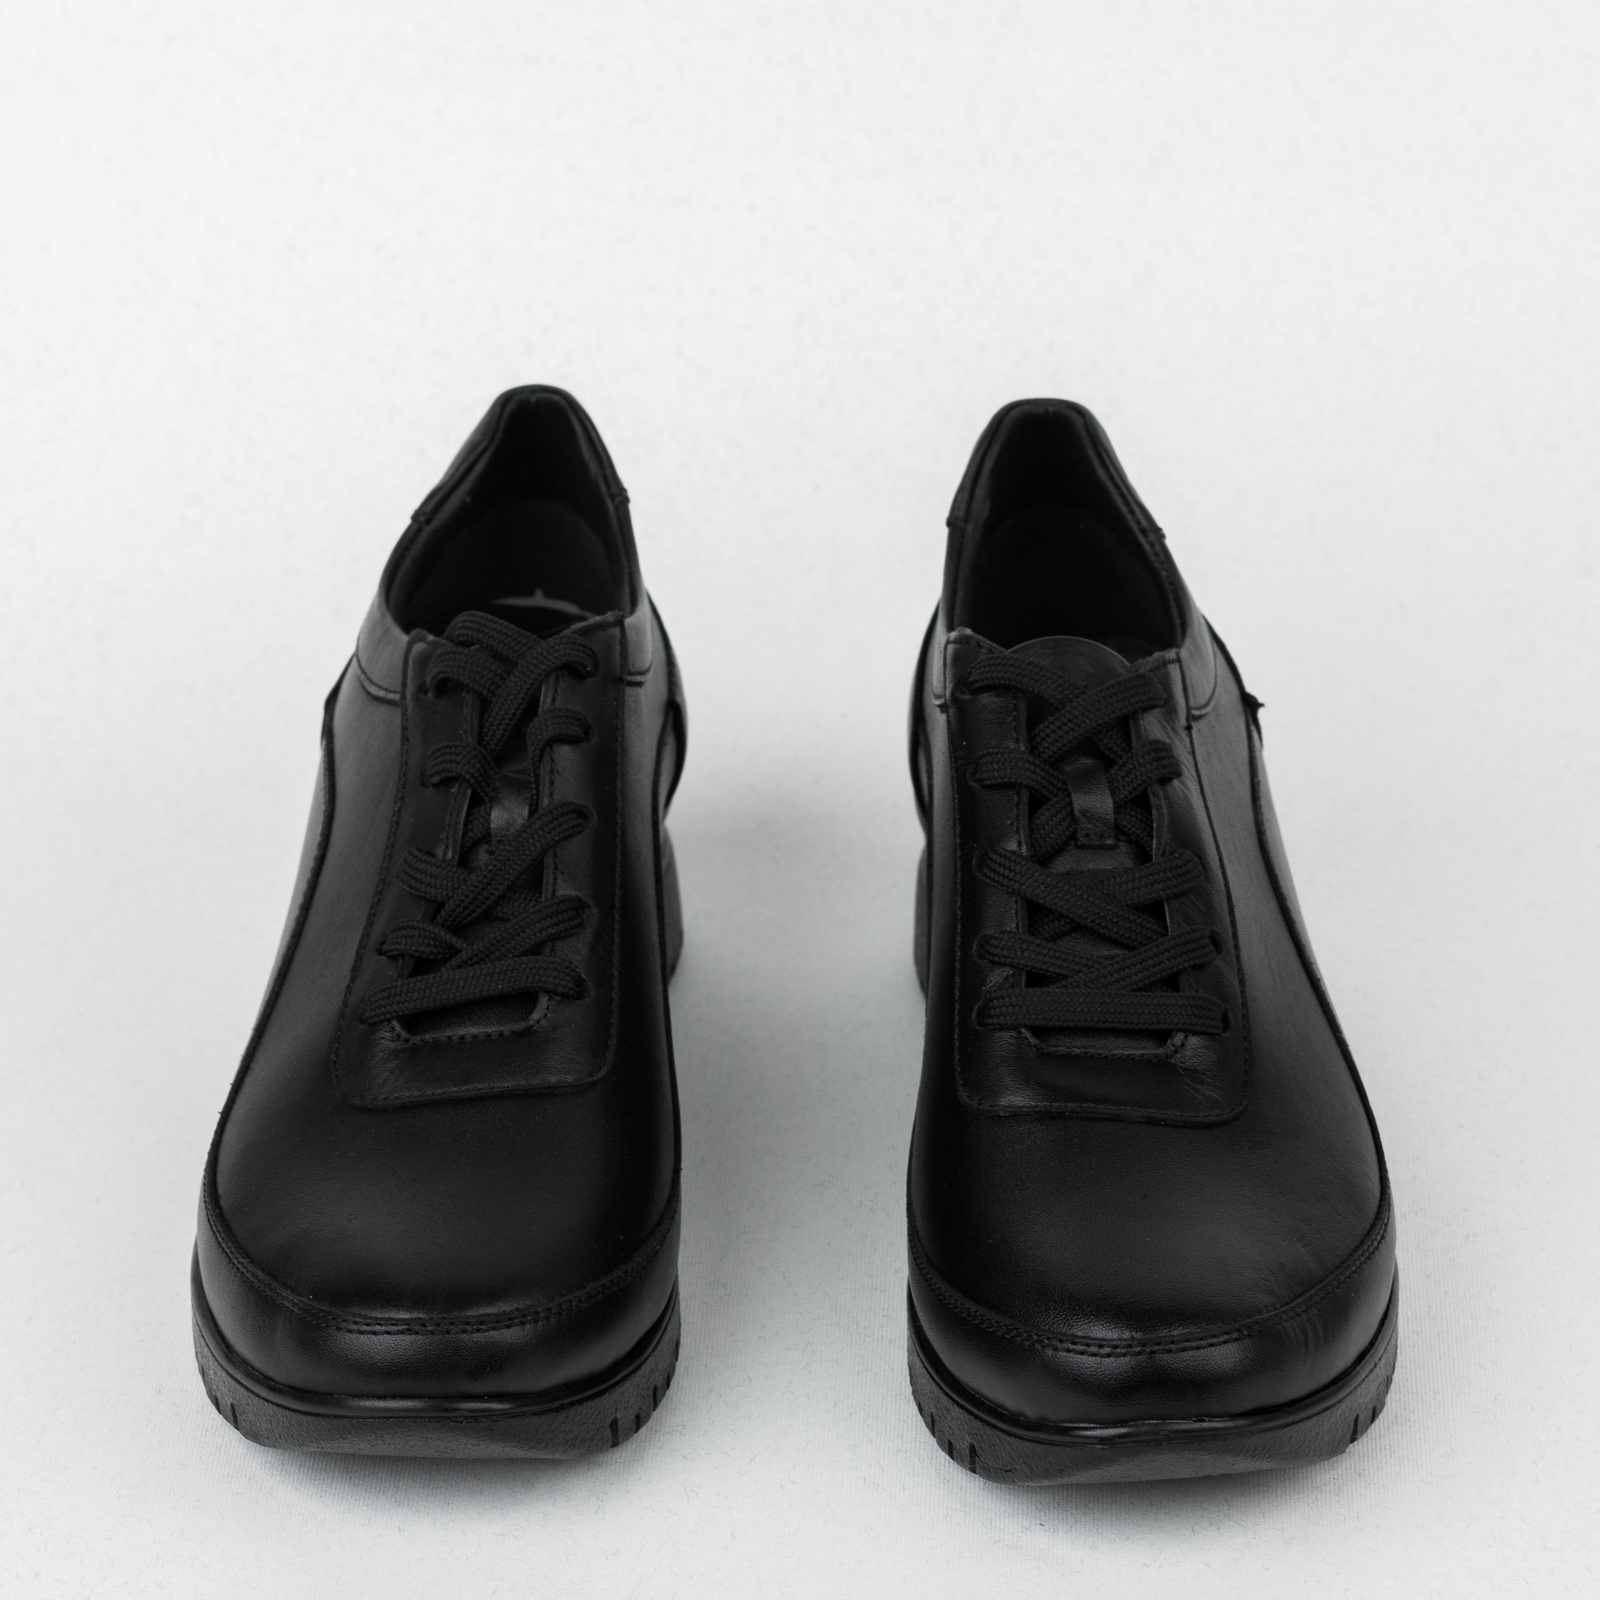 Bőr hétköznapi és lapos cipő B470 - FEKETE